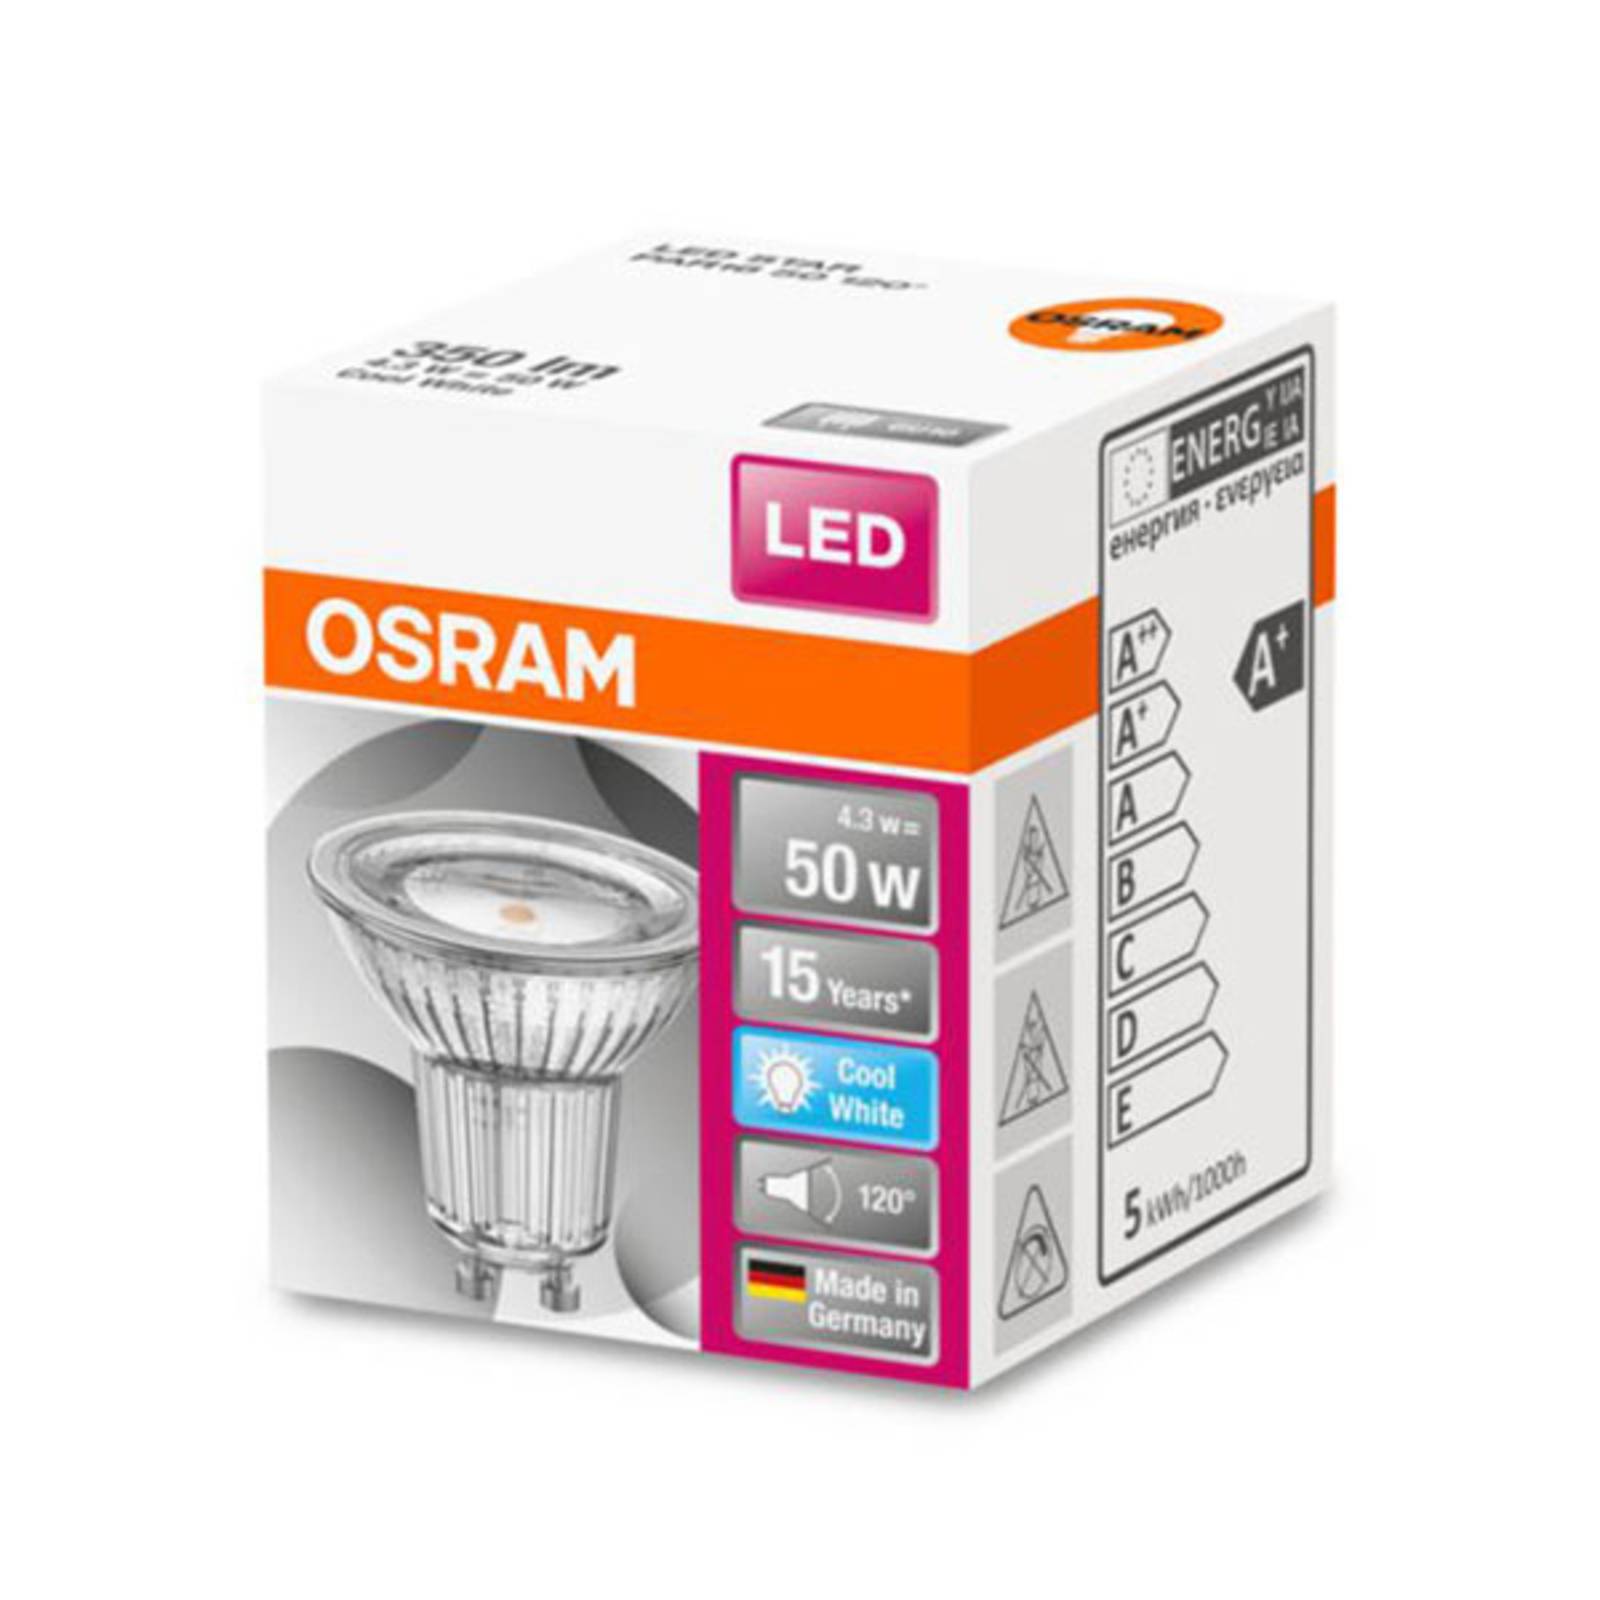 OSRAM LED reflektor GU10 4,3W általános fehér 120°